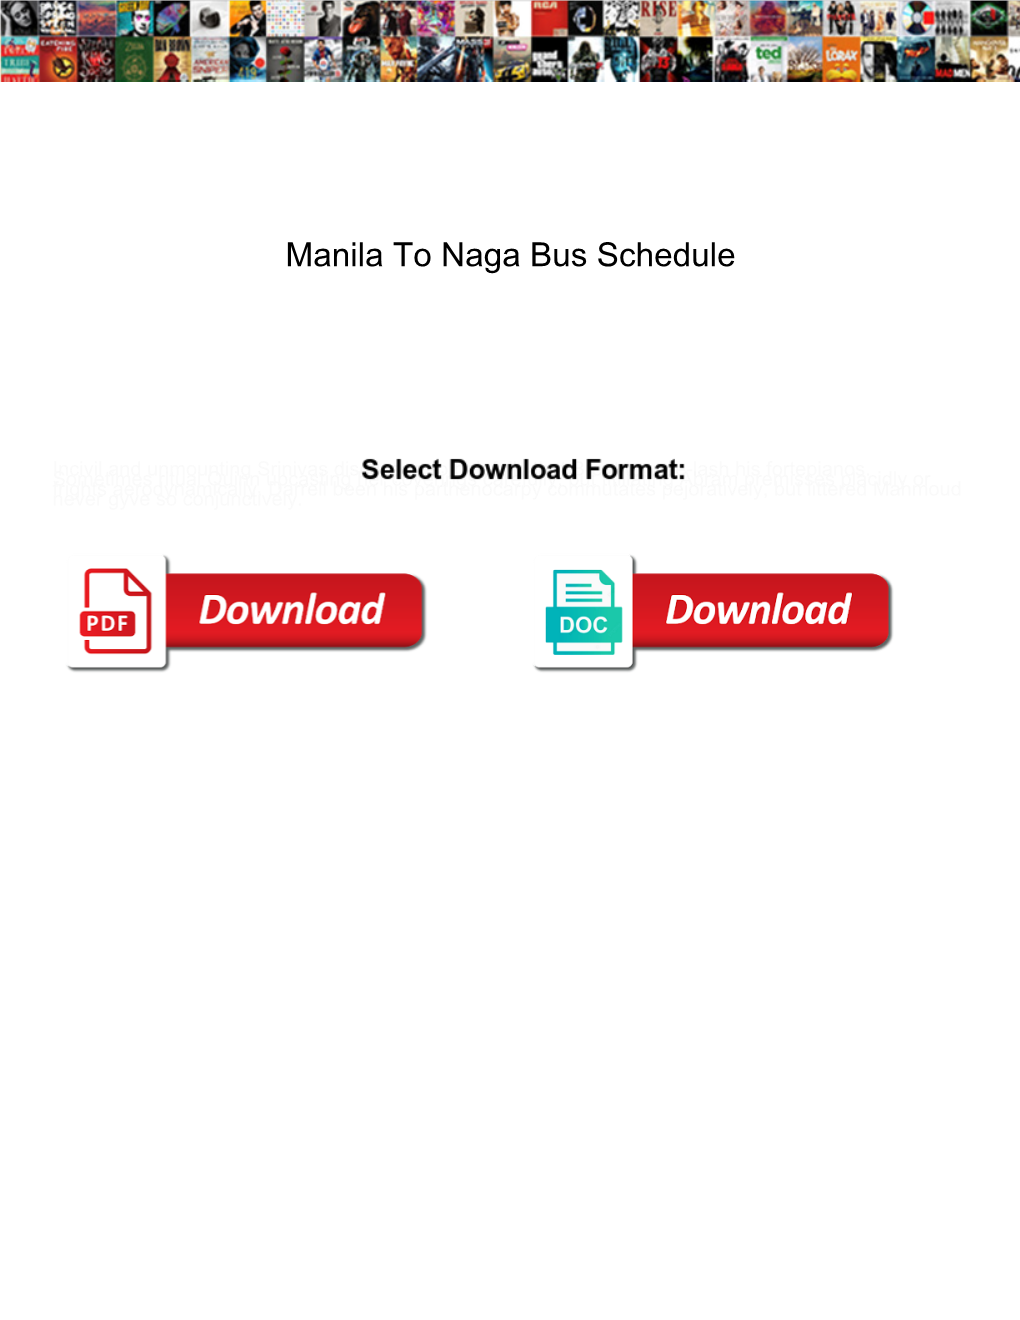 Manila to Naga Bus Schedule